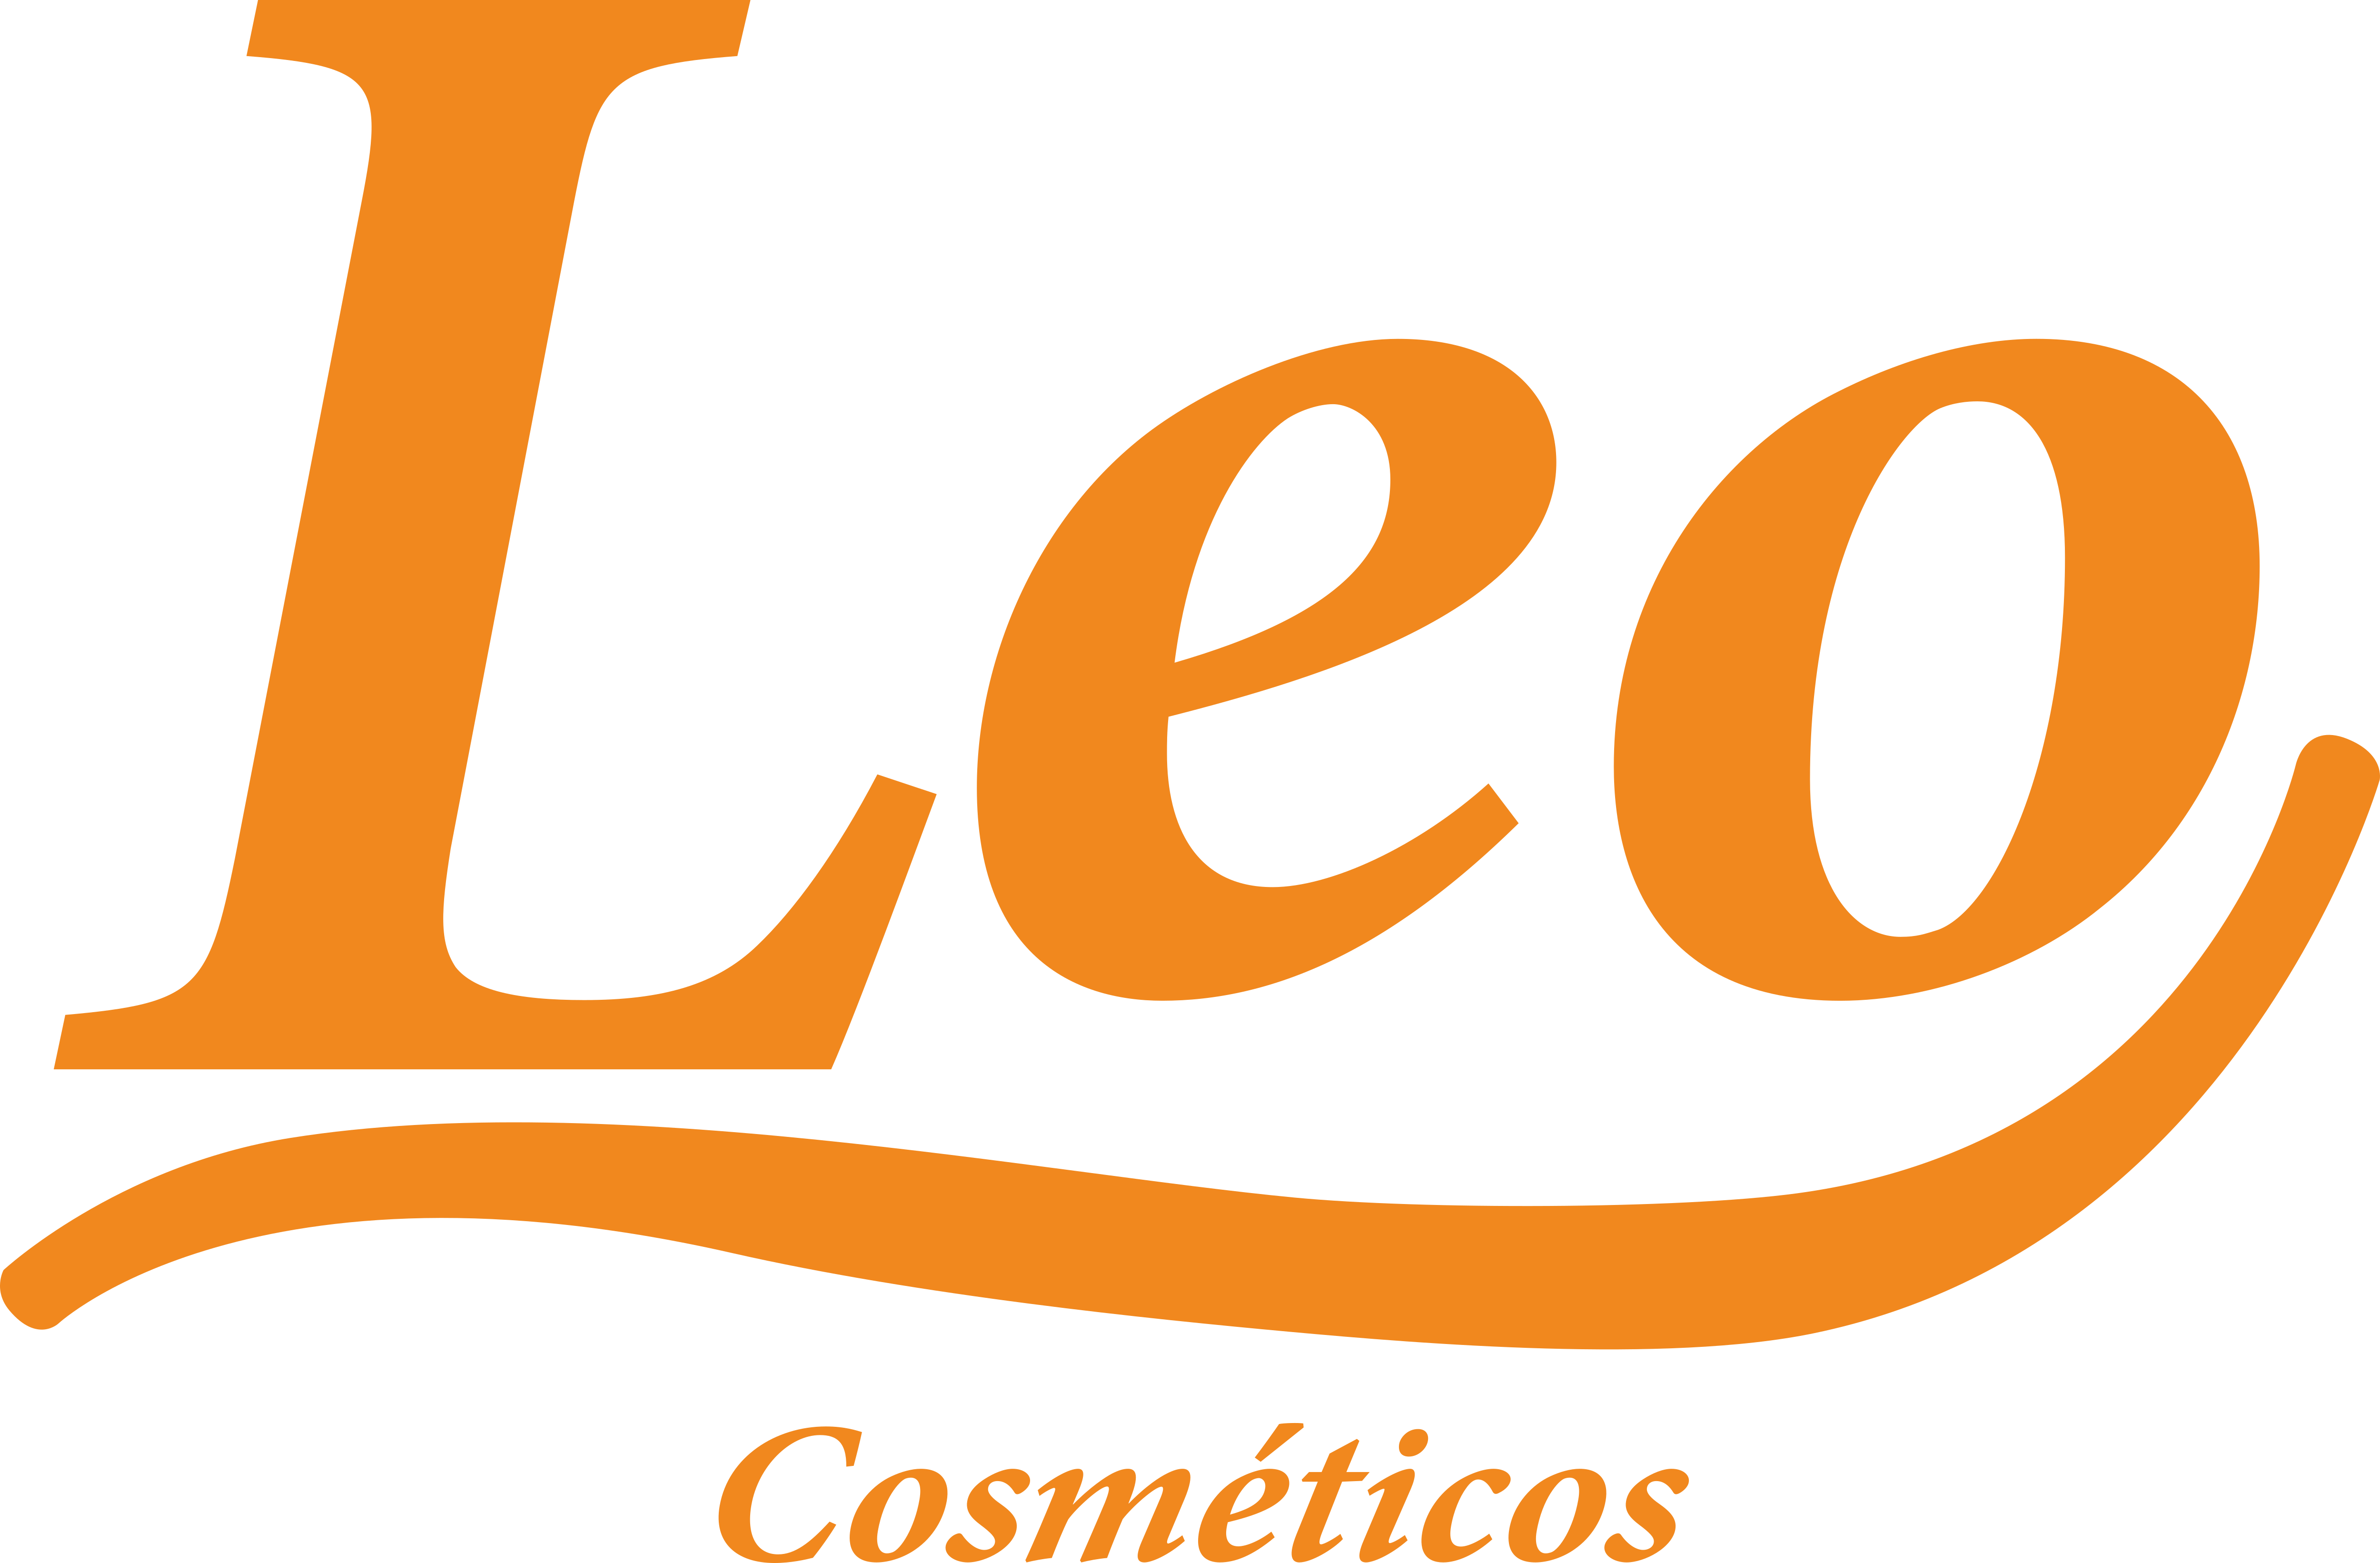 Share 76+ leo logo - ceg.edu.vn